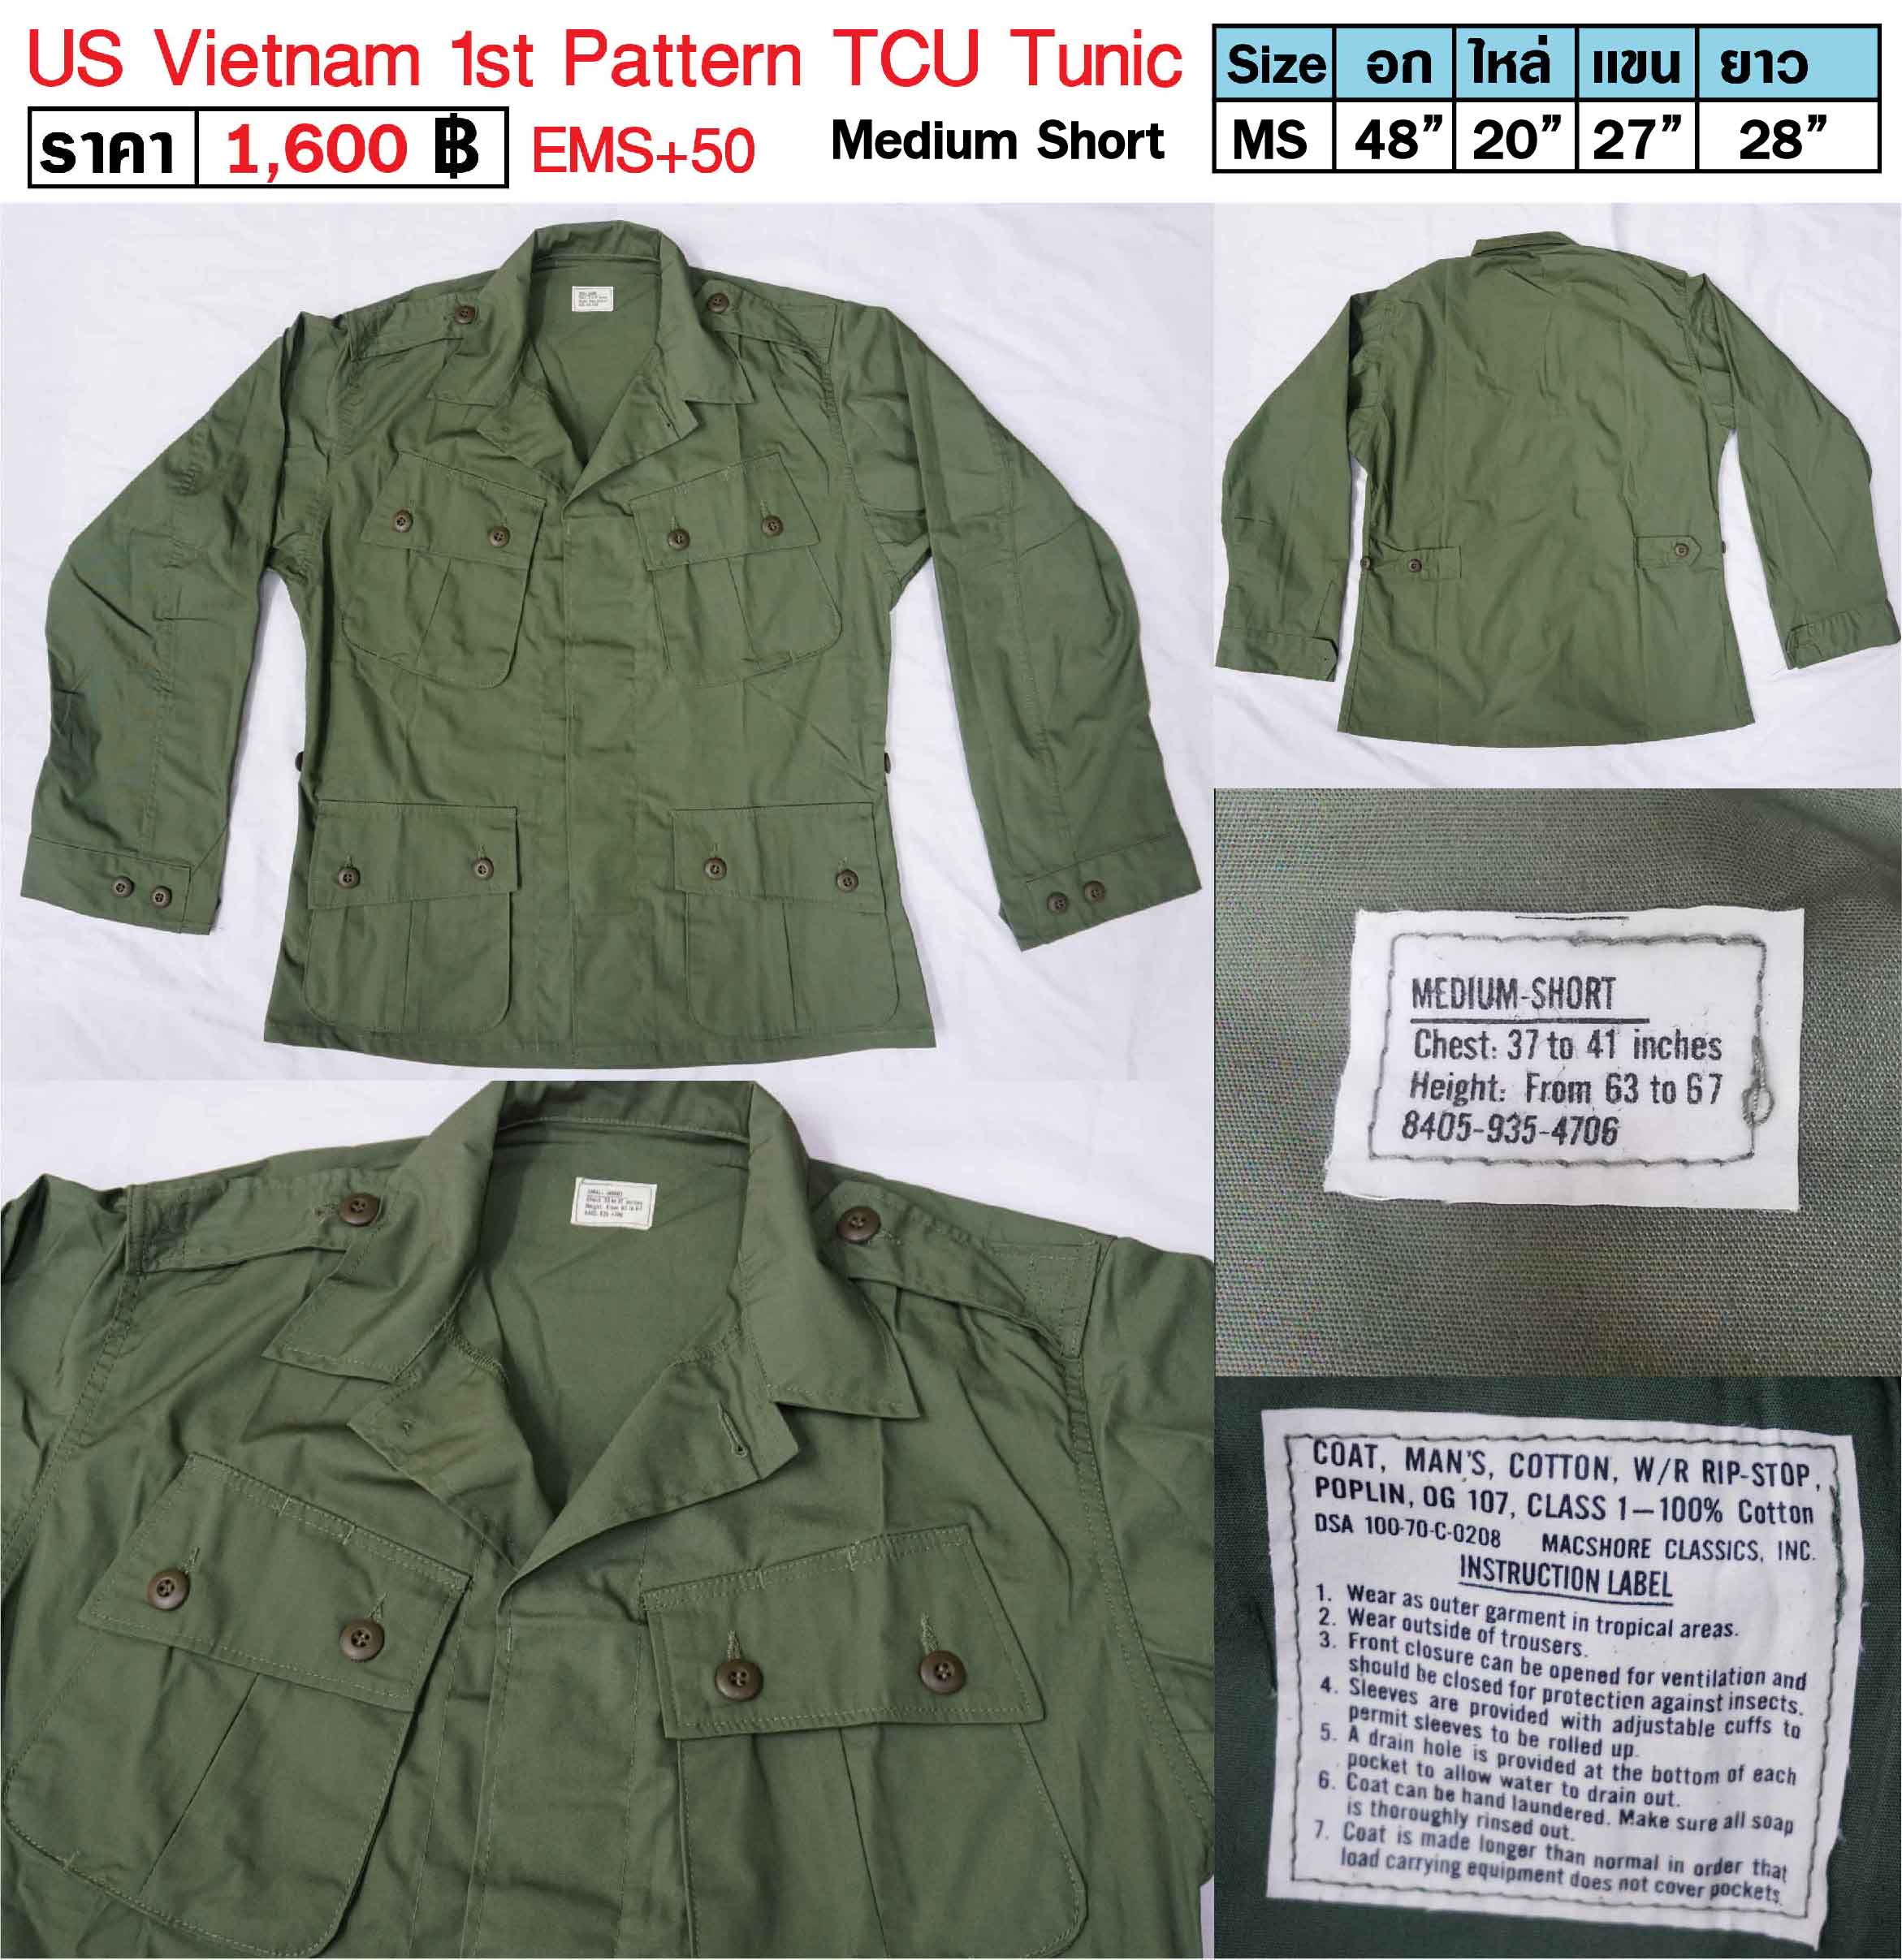 เสื้อทหารอเมริกา ทหารสหรัฐ สงครามเวียดนาม US Vietnam 1st Pattern TCU Tunic ร้าน BKK Militaria